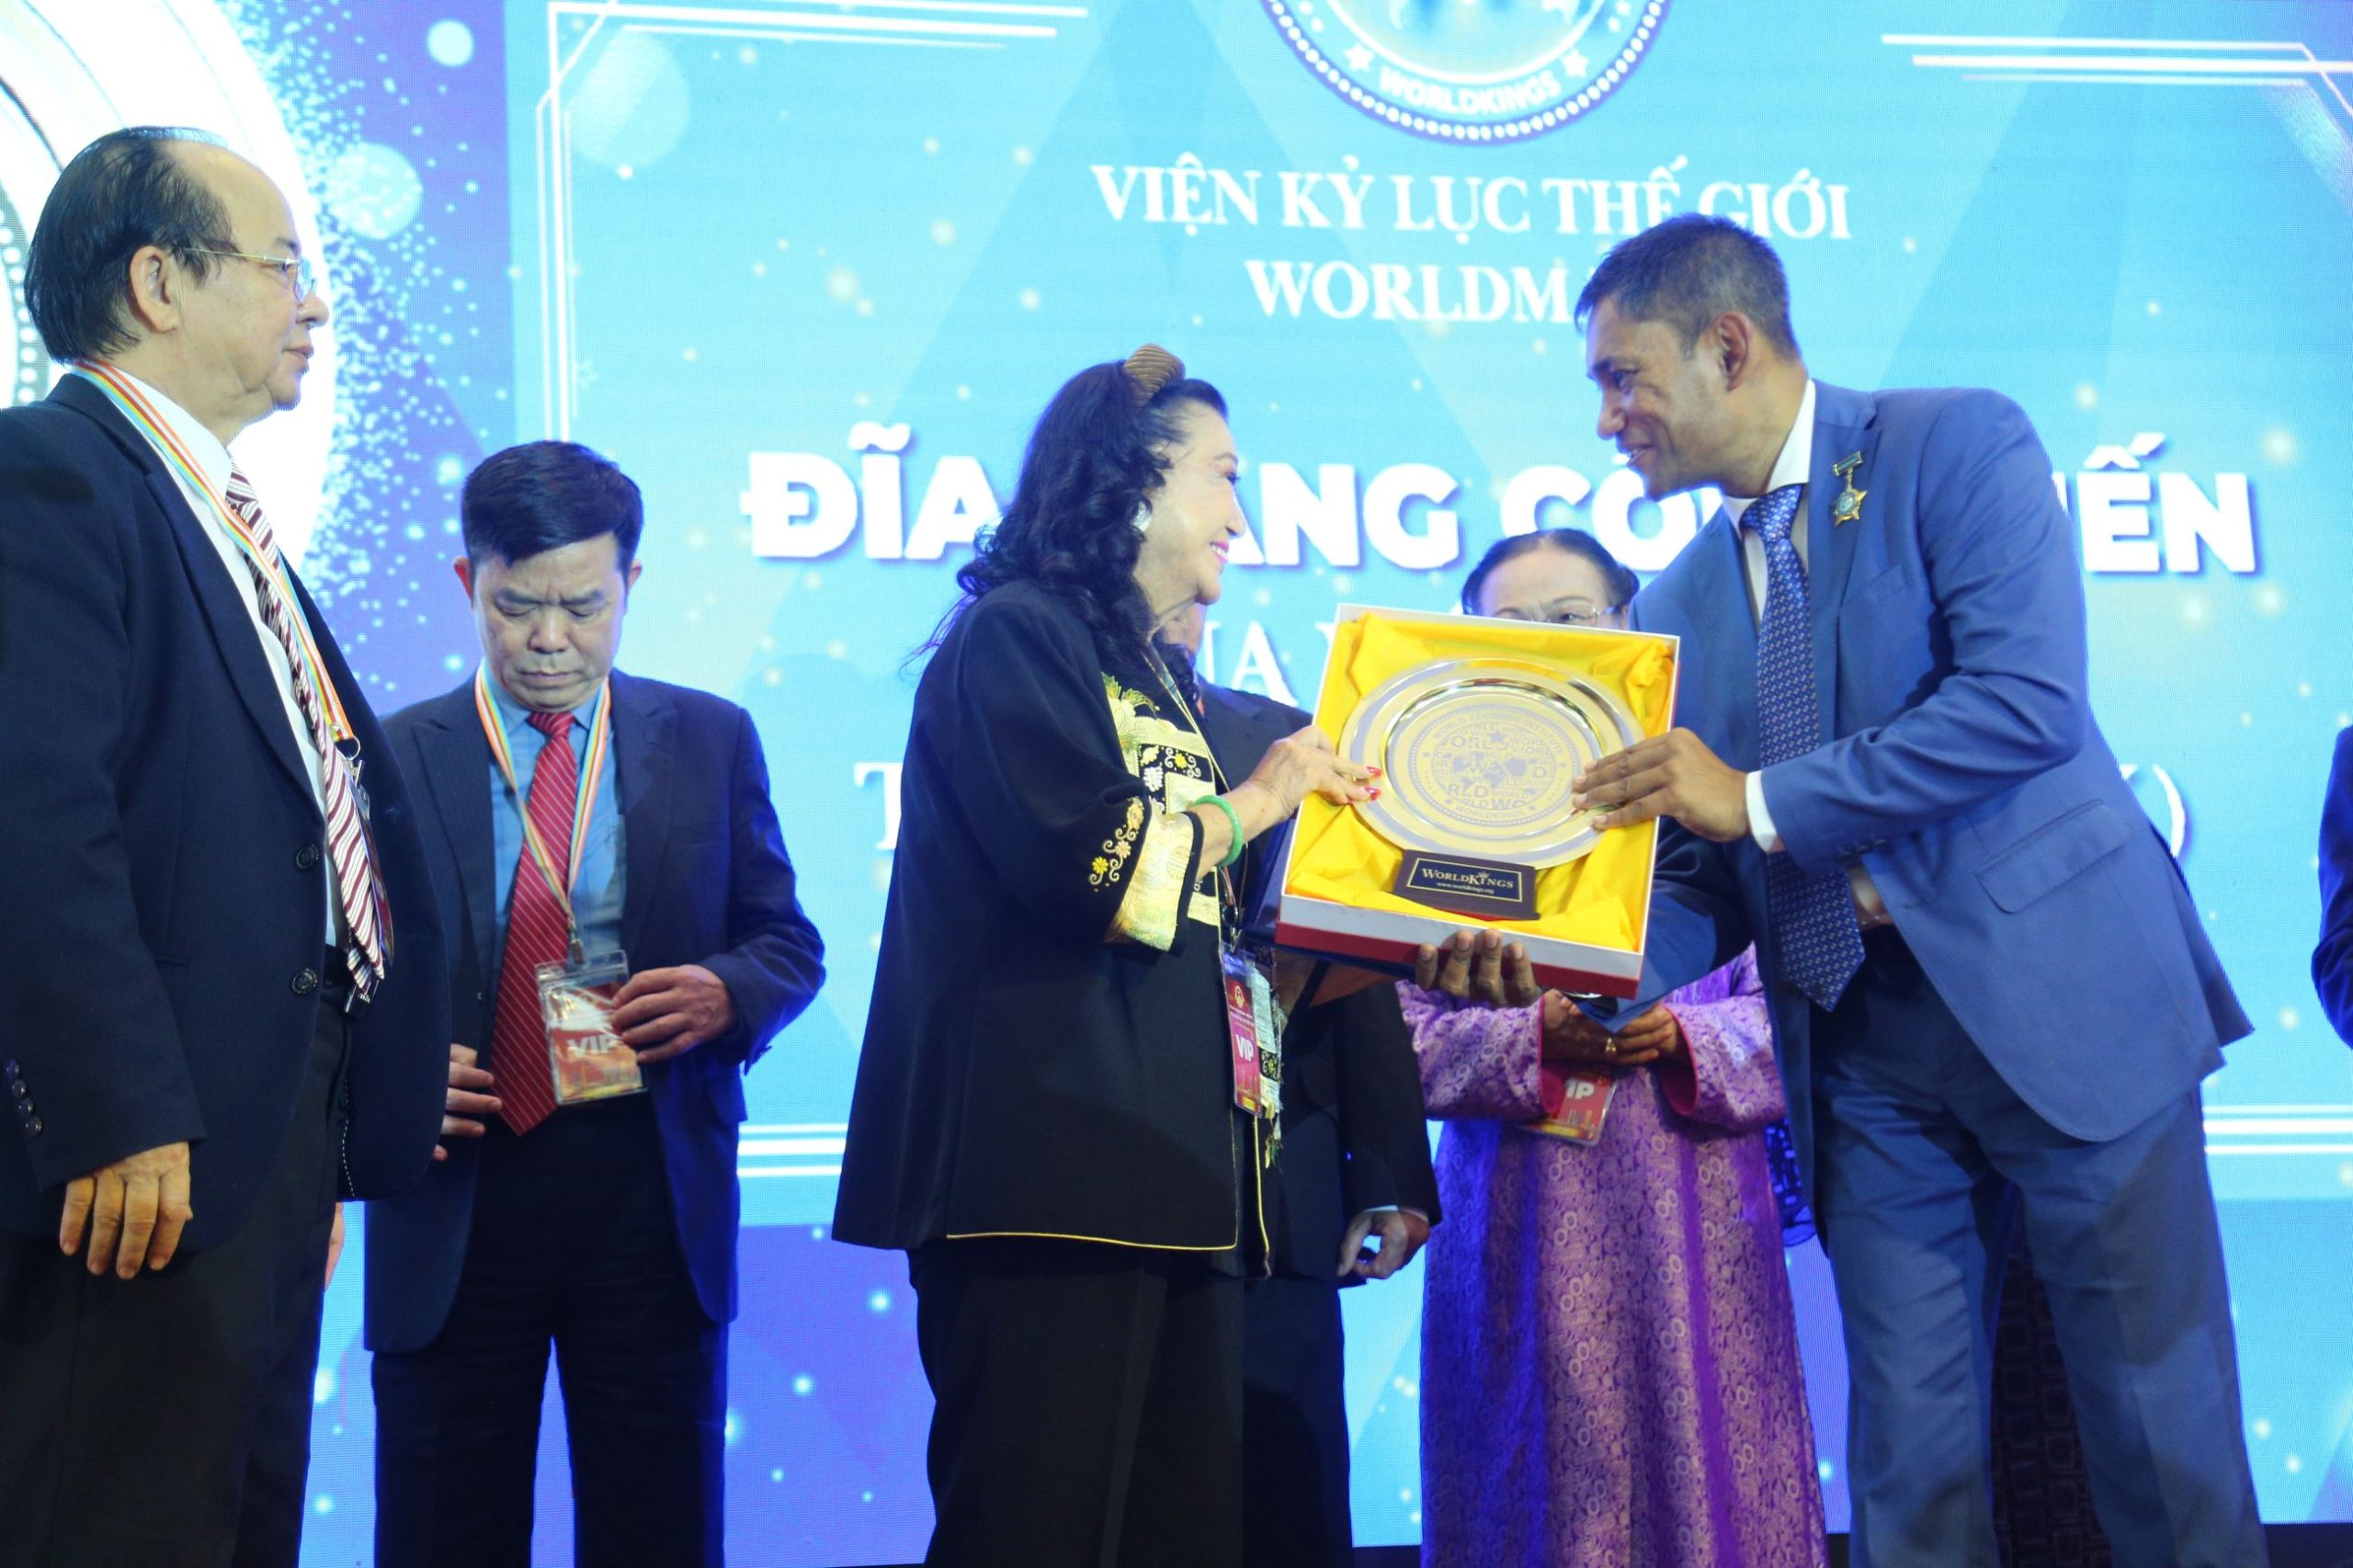 NSND Kim Cương vinh dự đón nhận Đĩa vàng Cống hiến từ Viện Kỷ lục Thế giới. 